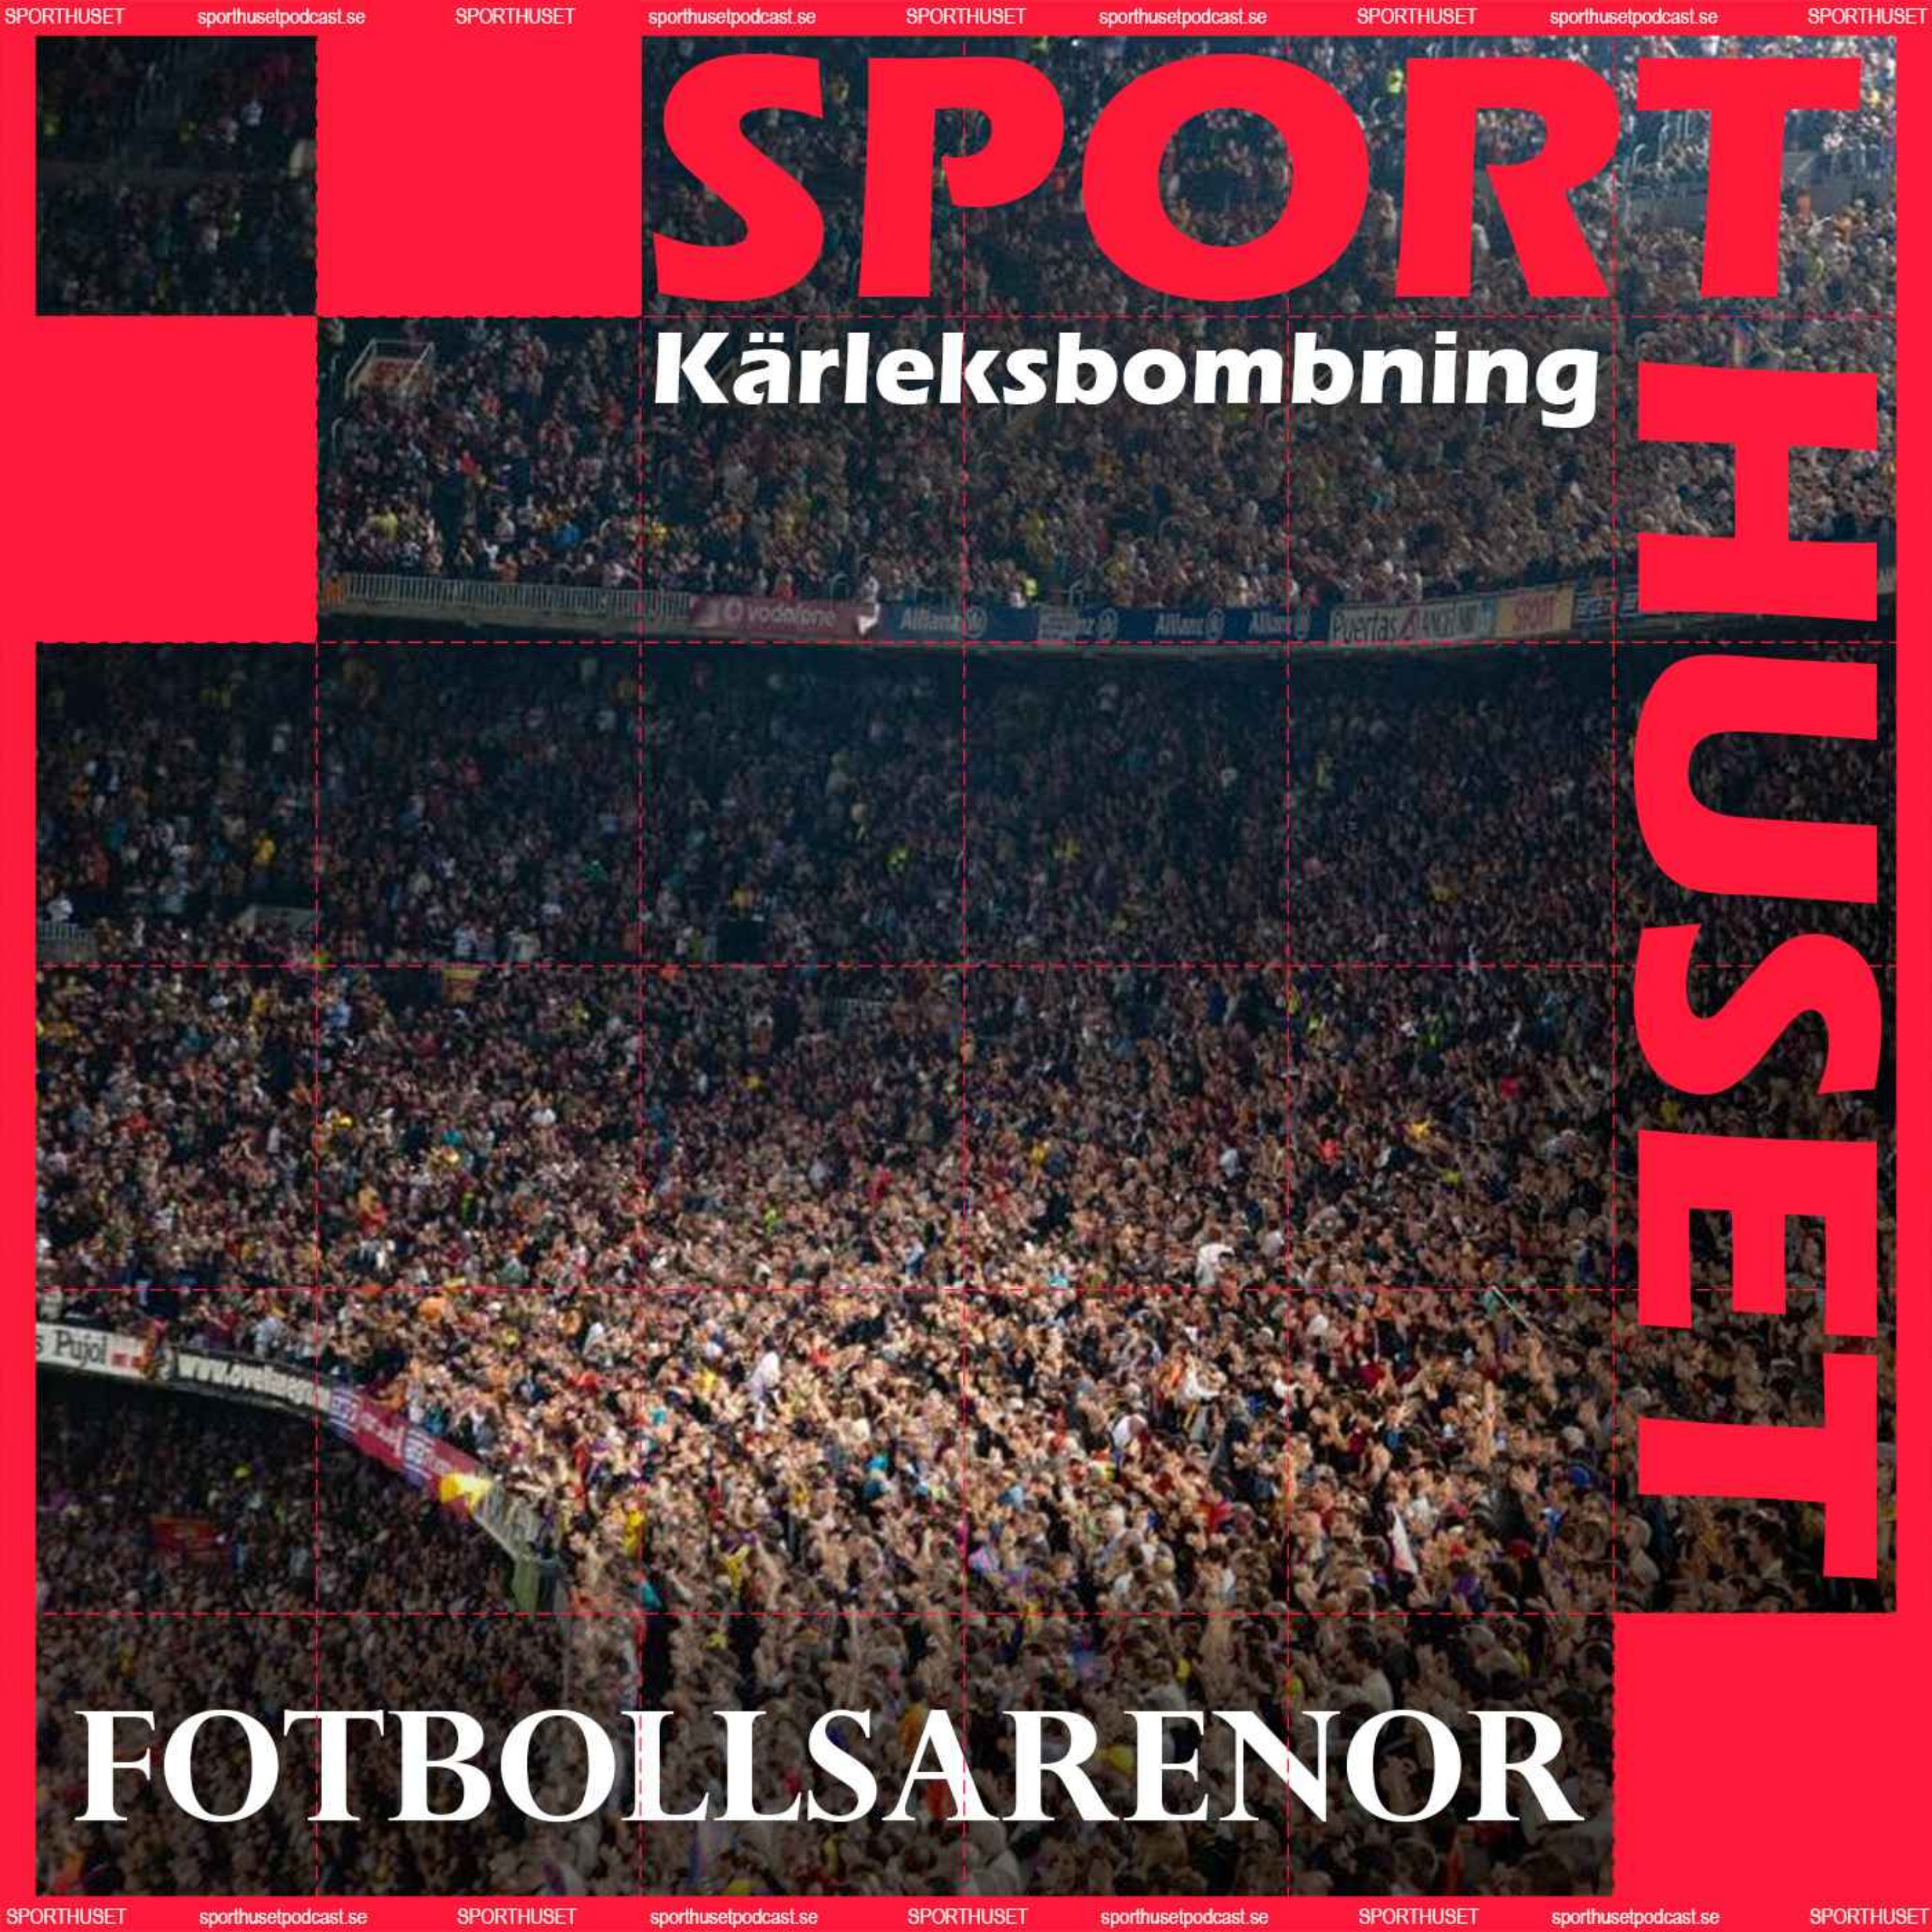 cover art for Kärleksbombning - Fotbollsarenor